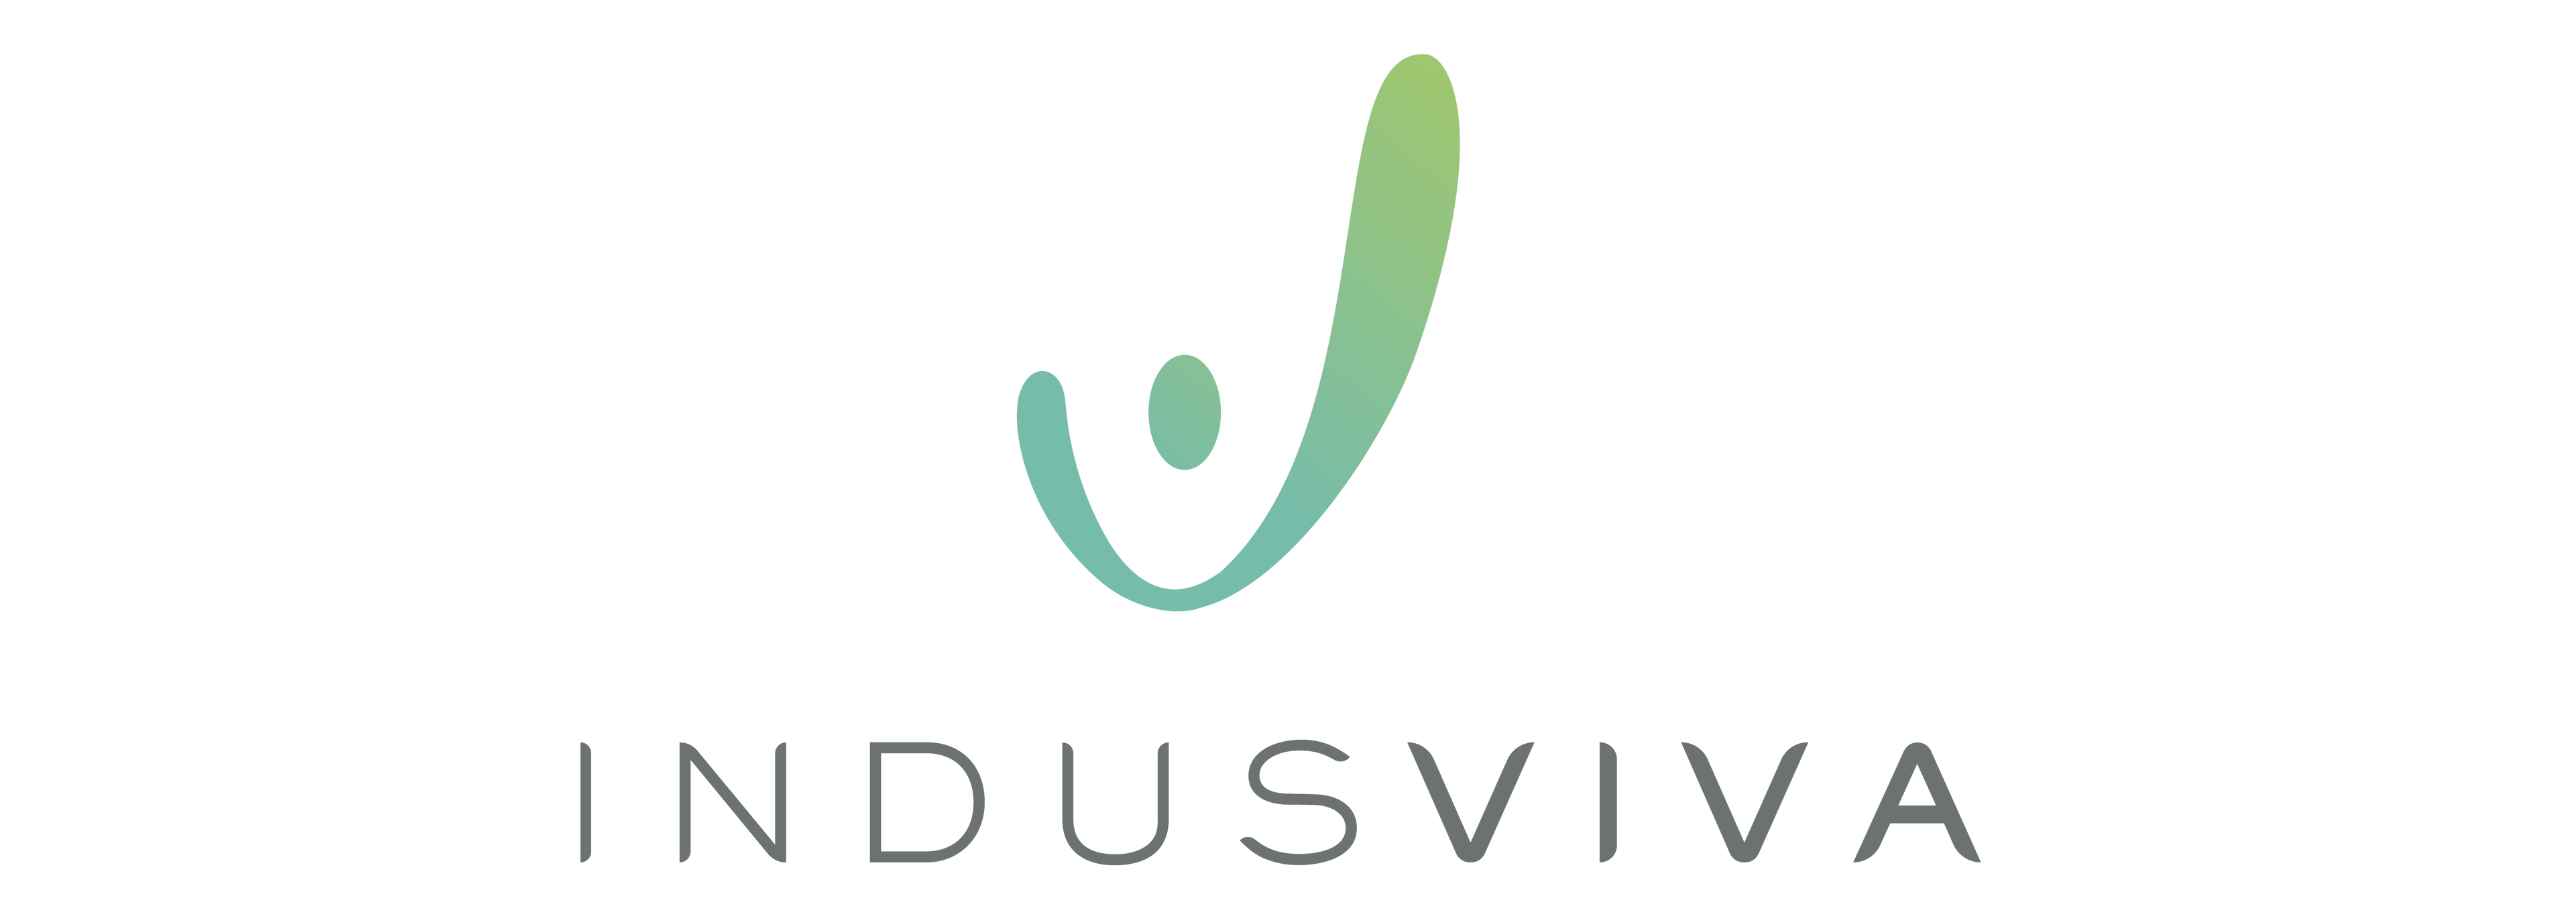 IndusViva Authorised Distributor - Health Consultant